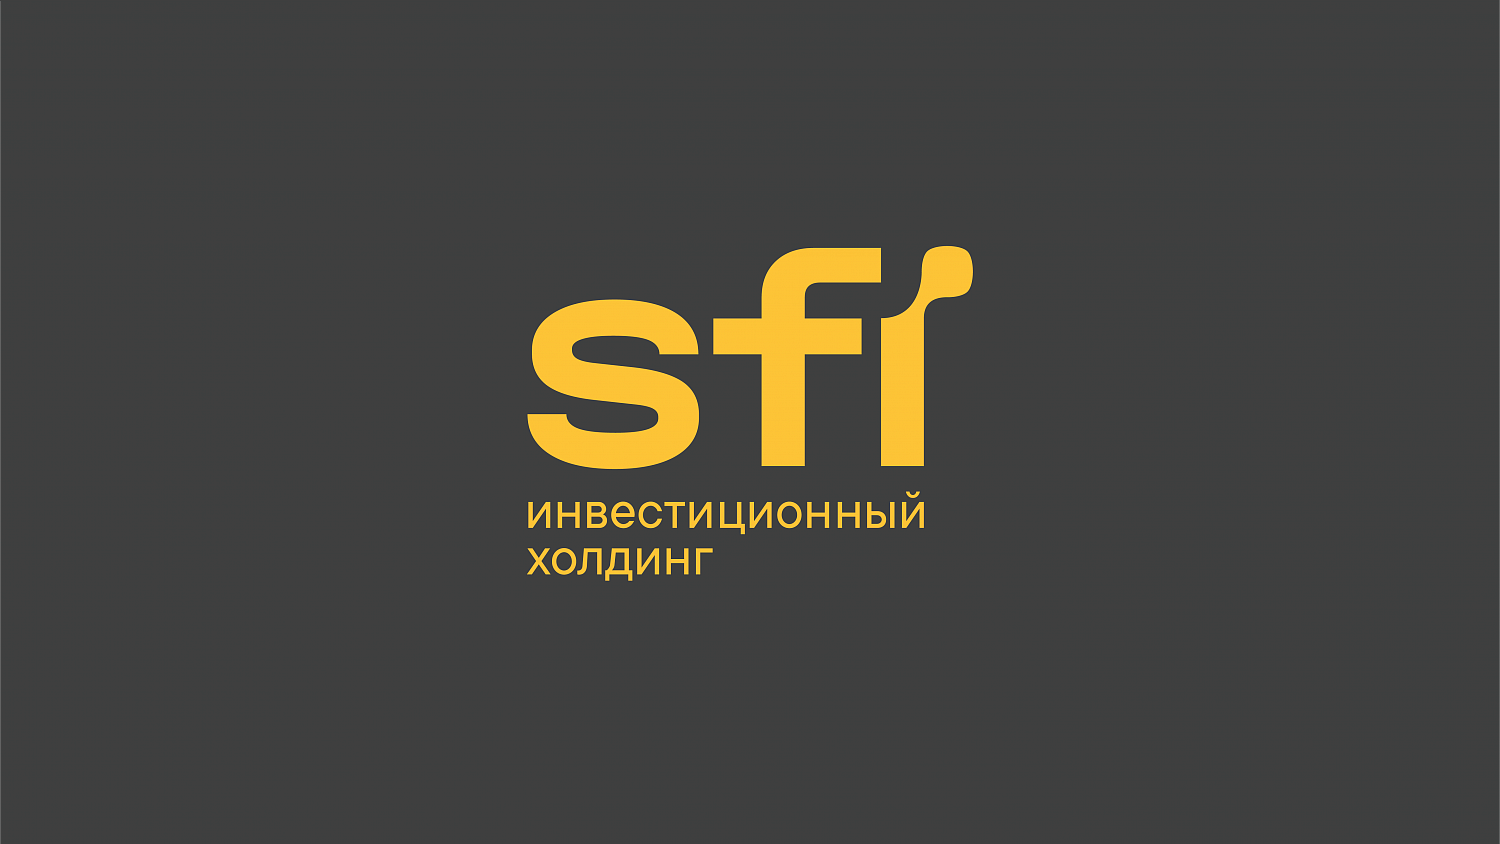 Инвестиционный холдинг SFI: Позиционирование и фирменный стиль - Портфолио Depot